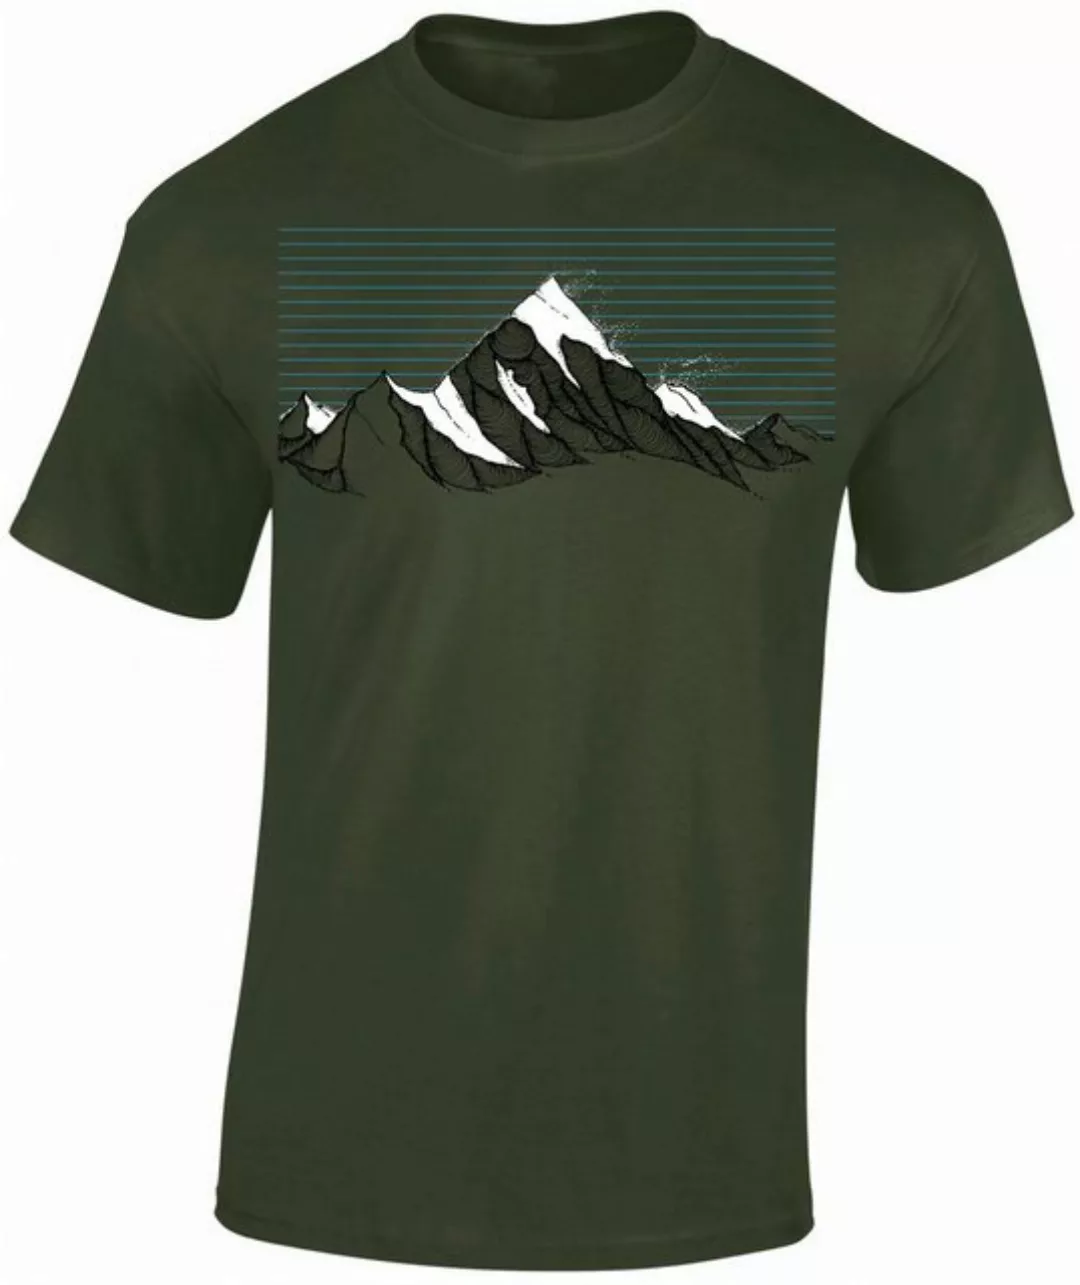 Baddery Print-Shirt Wander T-Shirt : "Bergwind" - Kletter T-Shirt für Wande günstig online kaufen